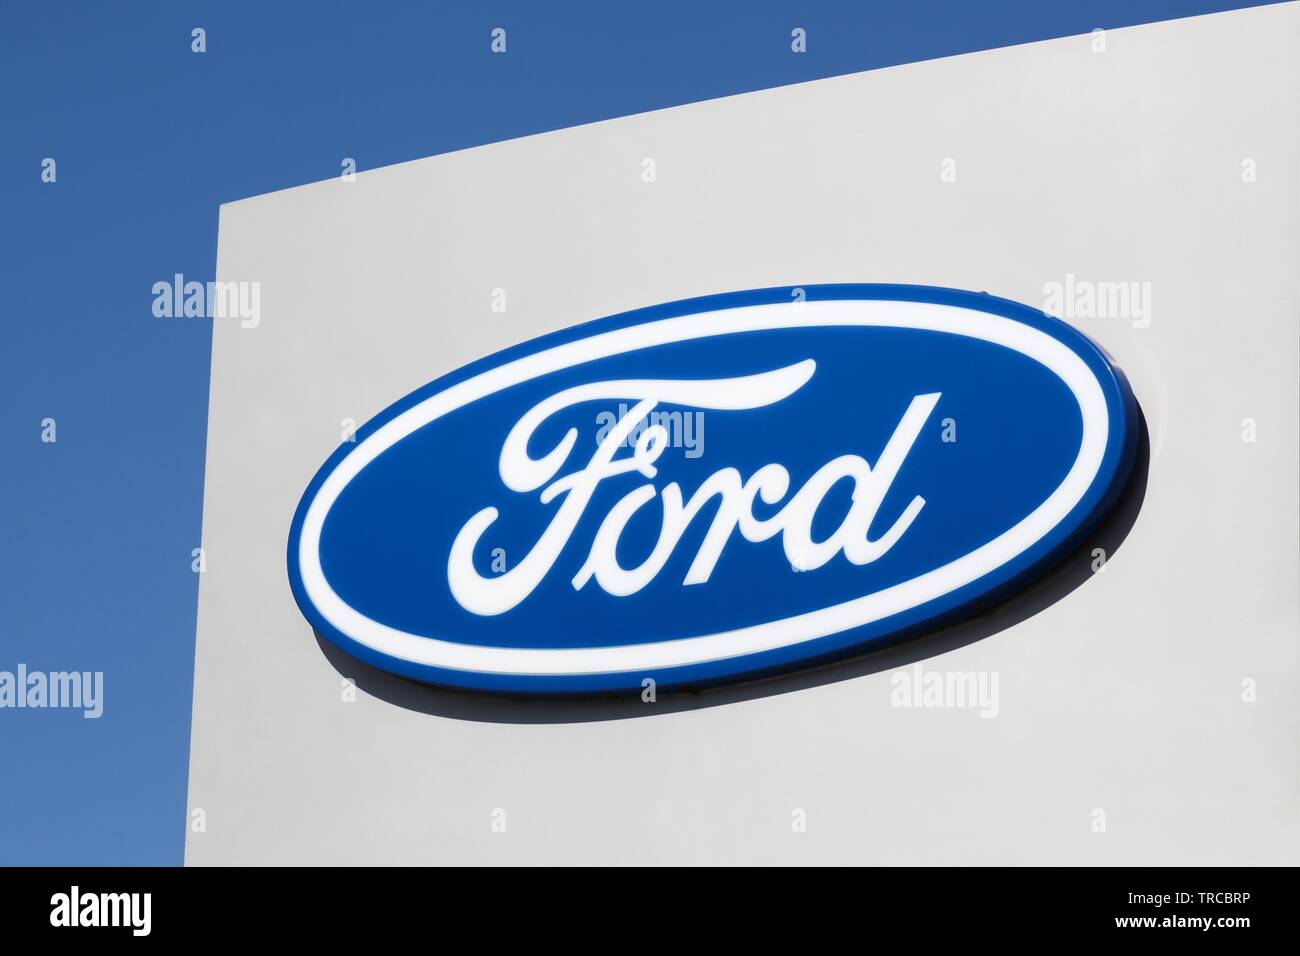 Risskov, Danimarca - 11 Maggio 2019: Ford logo su una parete. Ford è una multinazionale americana automobilistico con sede a Dearborn, Michigan, Stati Uniti d'America Foto Stock